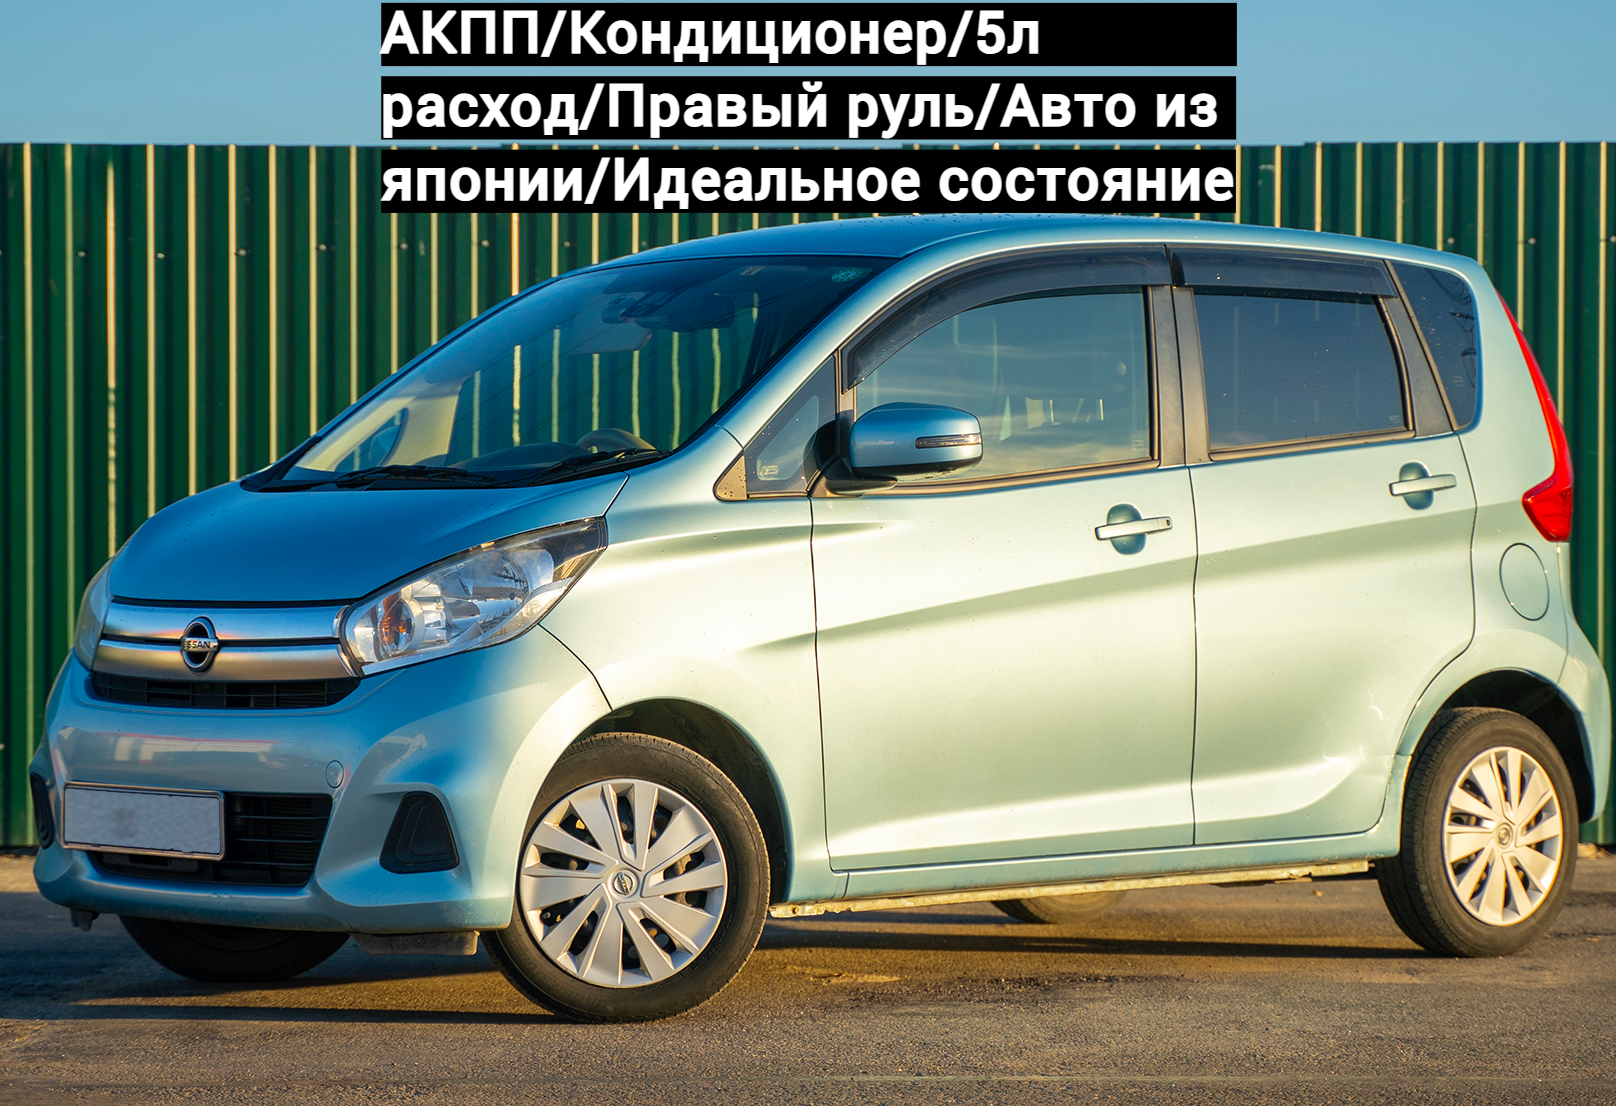 Аренда nissan dayz эконом класса 2016 года в городе Москва Парнас от 1500 руб./сутки, передний привод, двигатель: бензин, объем 0.7 литров, ОСАГО (Мультидрайв), без водителя, недорого - RentRide